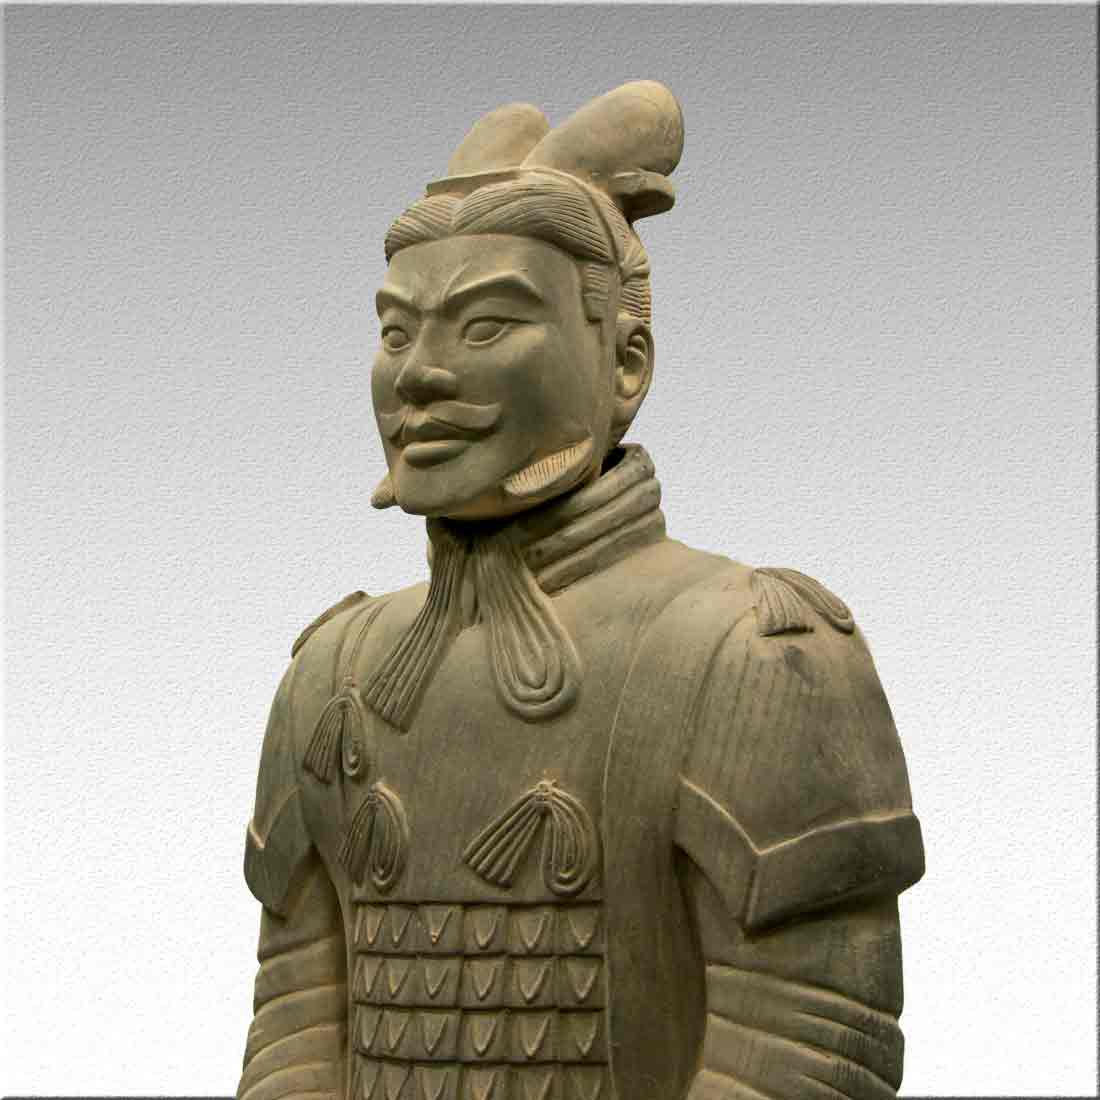 Статуя, "Терракотовый воин" - Генерал императорской гвардии в интернет-студии декора / шоурум | ChinaHouse.studio